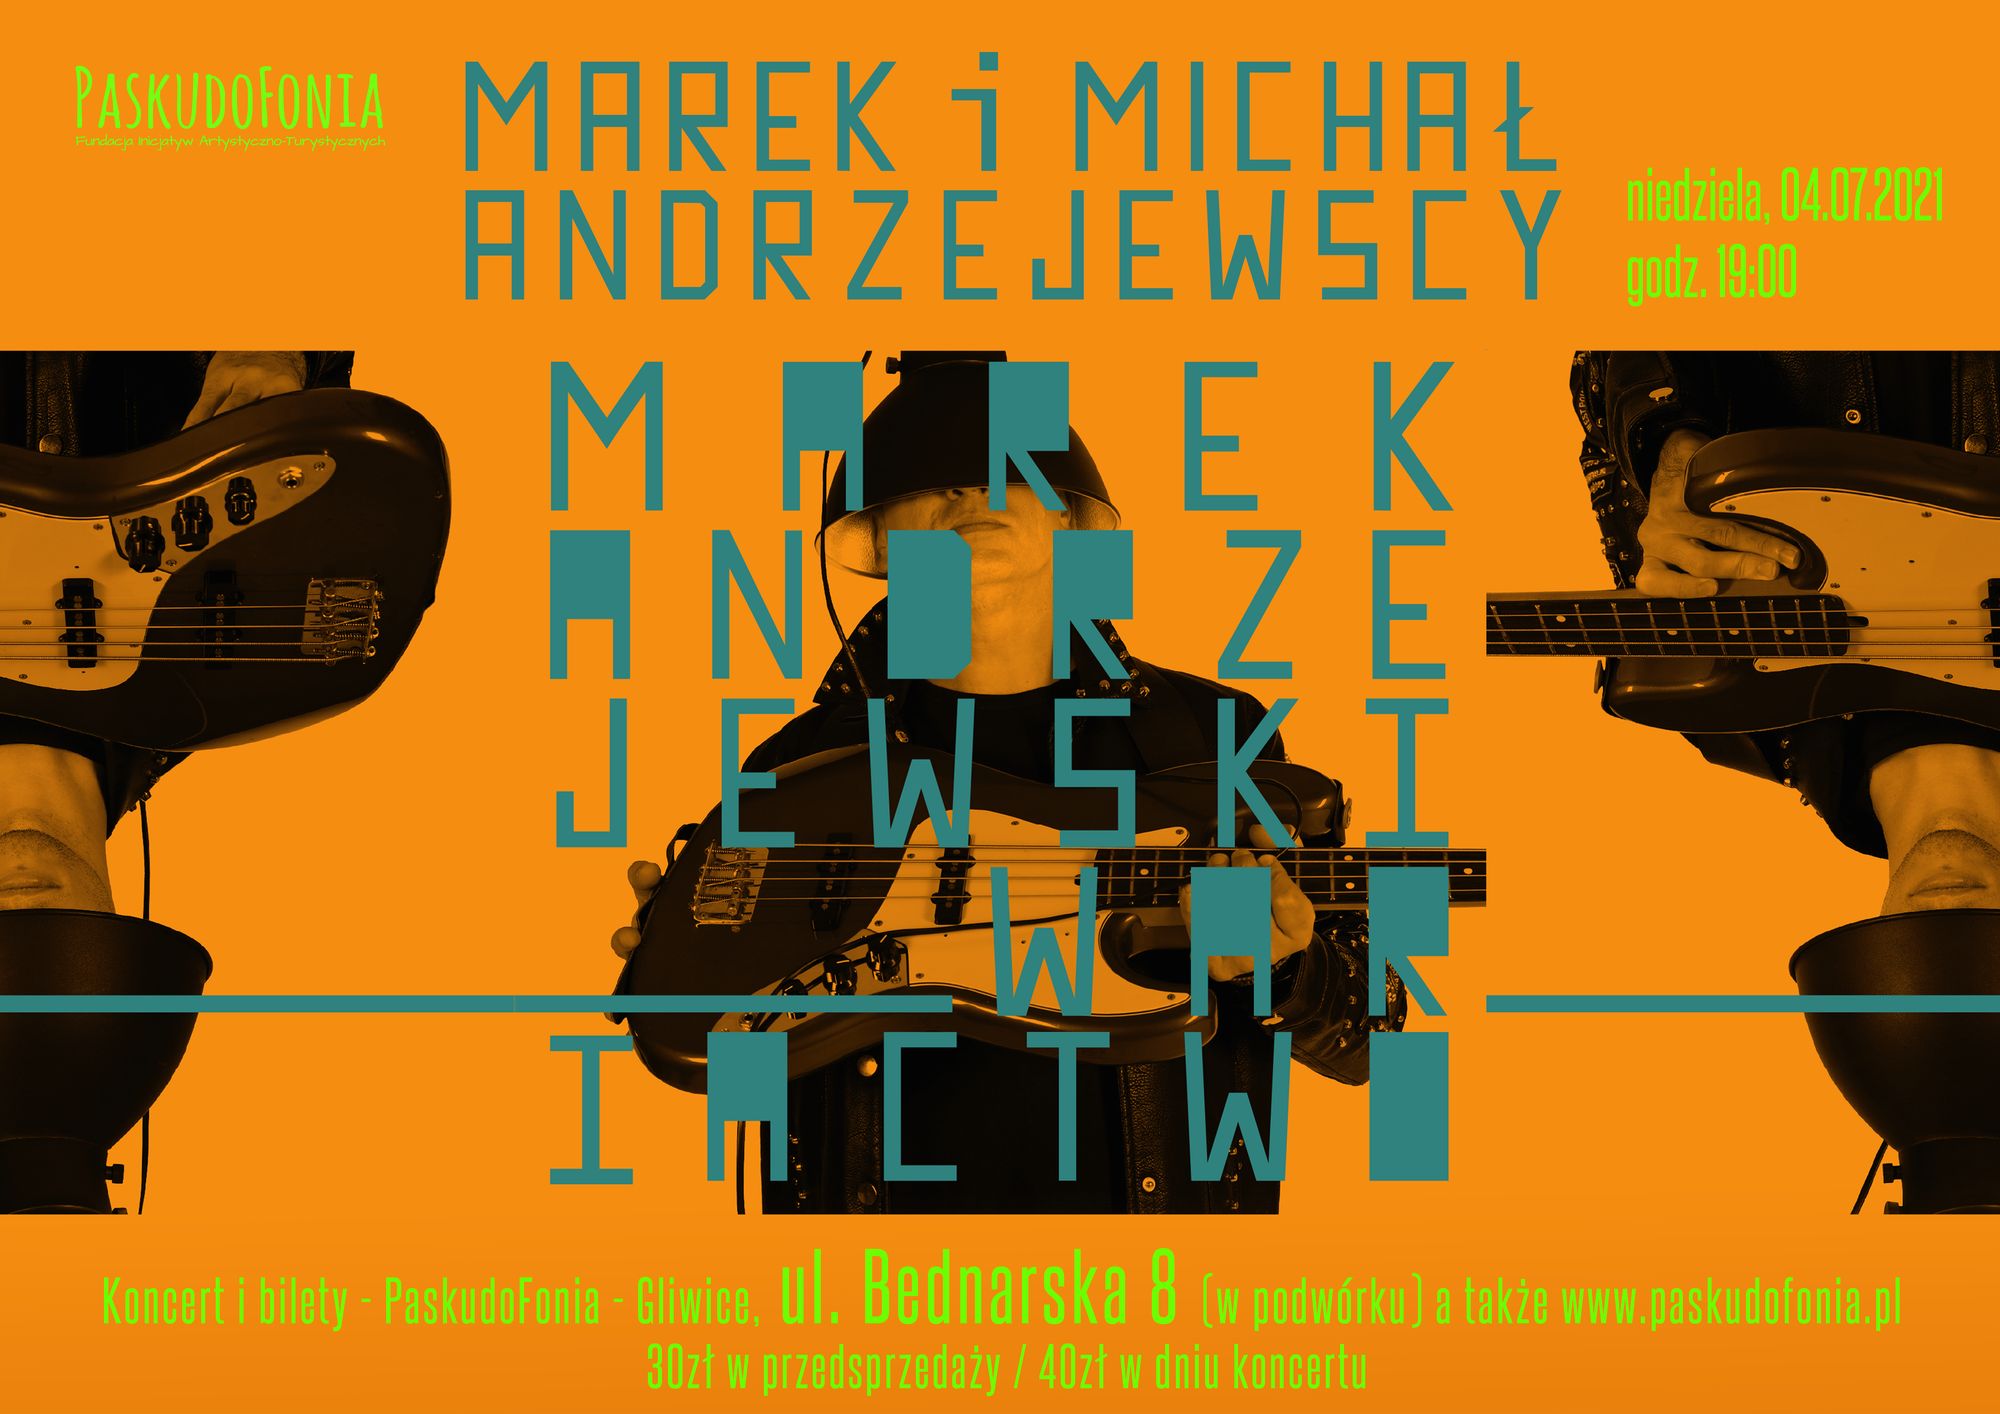 PaskudoFonia 29. - koncert Marka i Michała Andrzejewskich